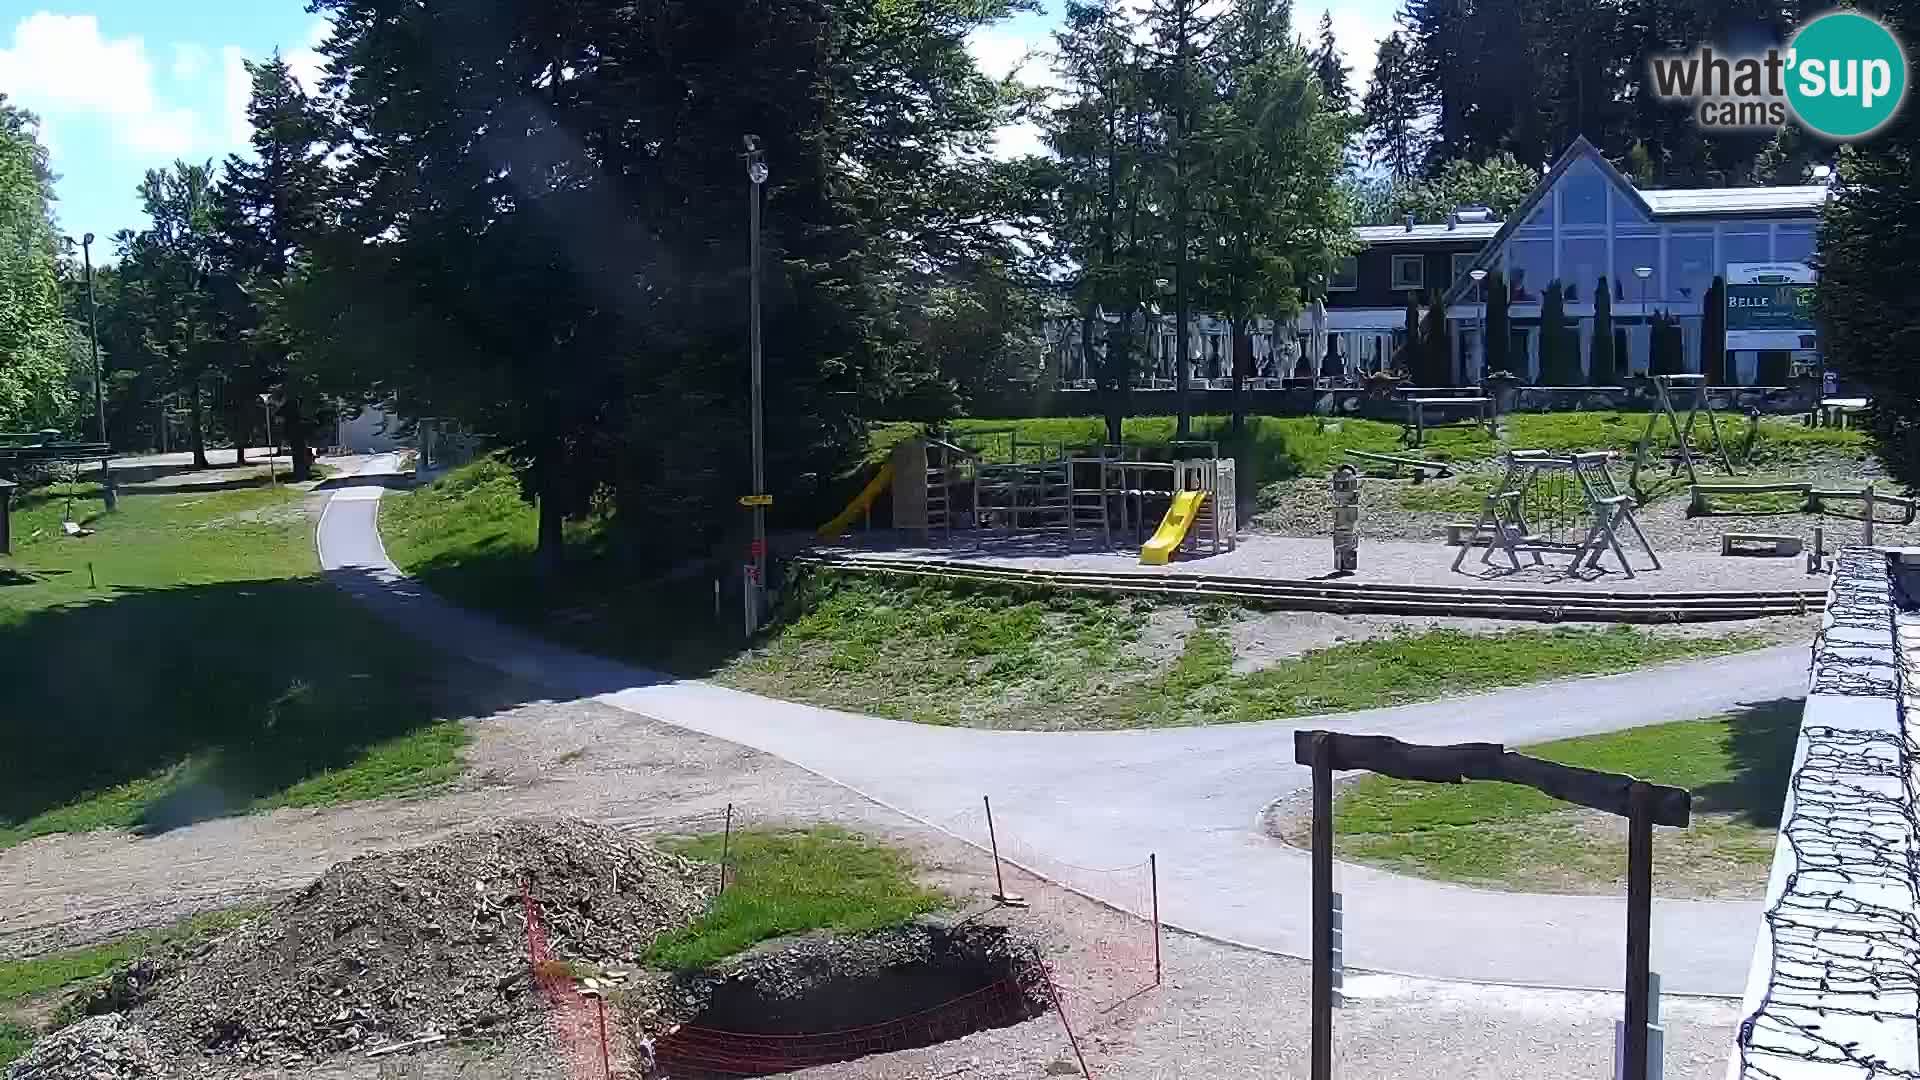 Station ski Livecam Maribor Pohorje – Bellevue